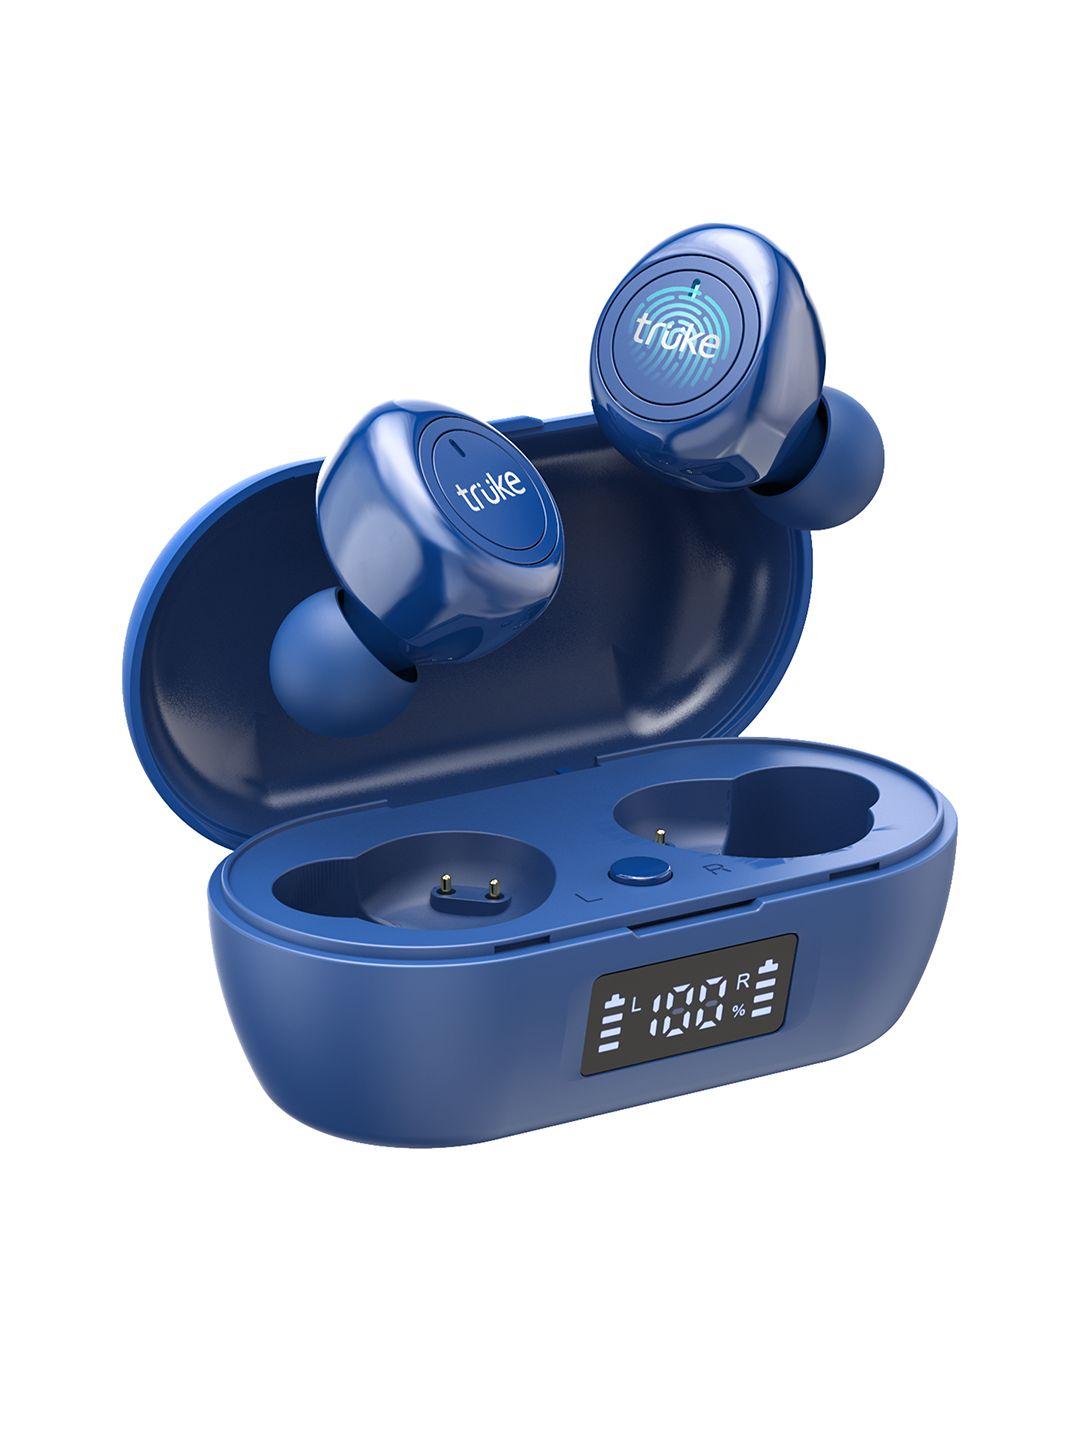 truke fit 1+ true wireless earbuds - blue